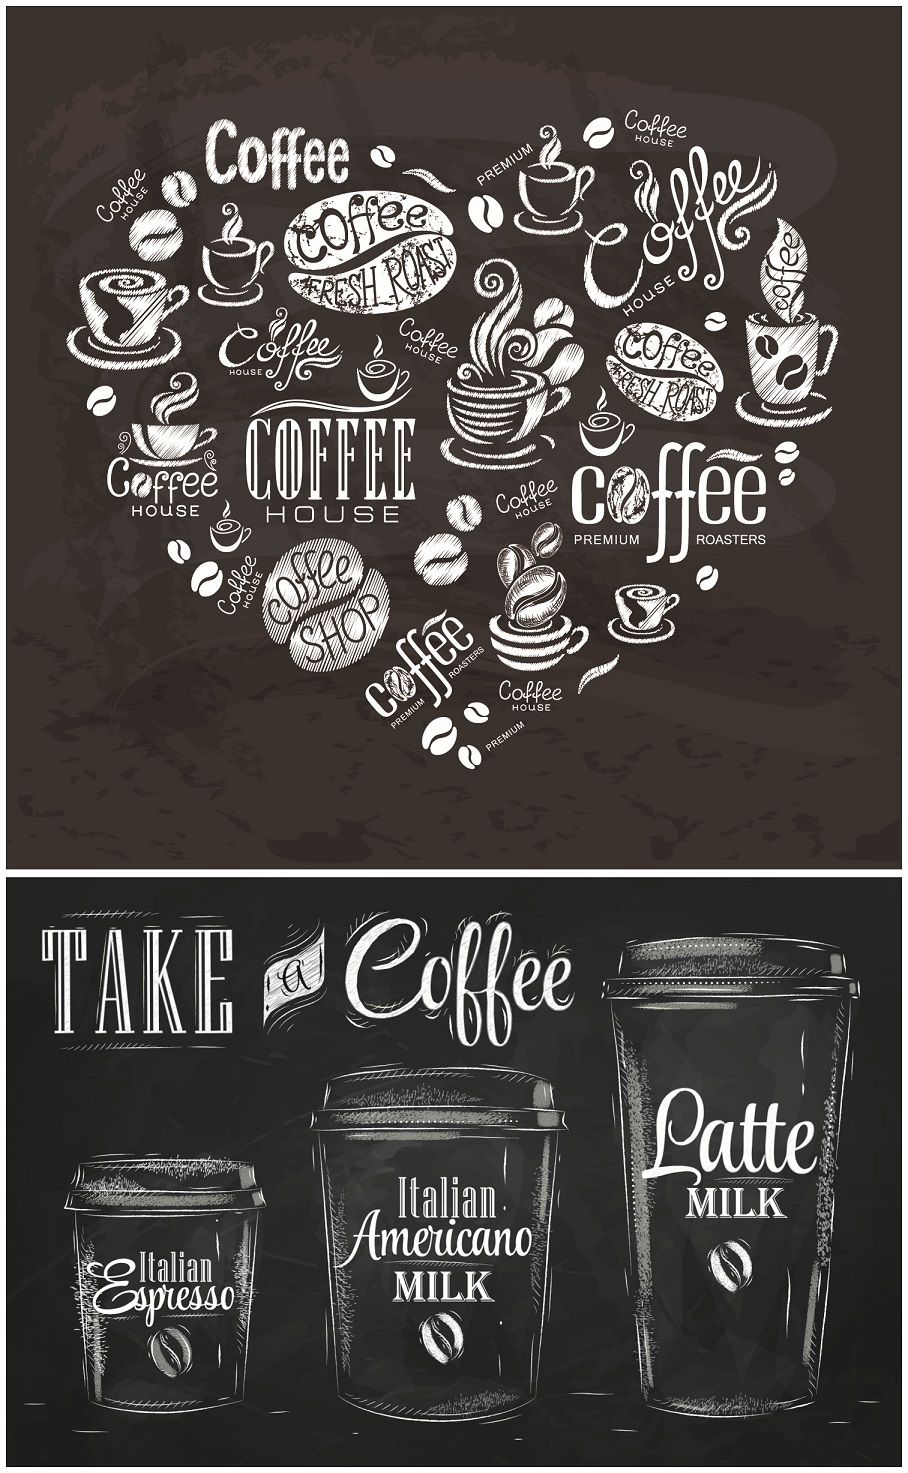 A0909矢量黑板粉笔咖啡菜单模板插画海报拿铁咖啡杯 AI设计素材